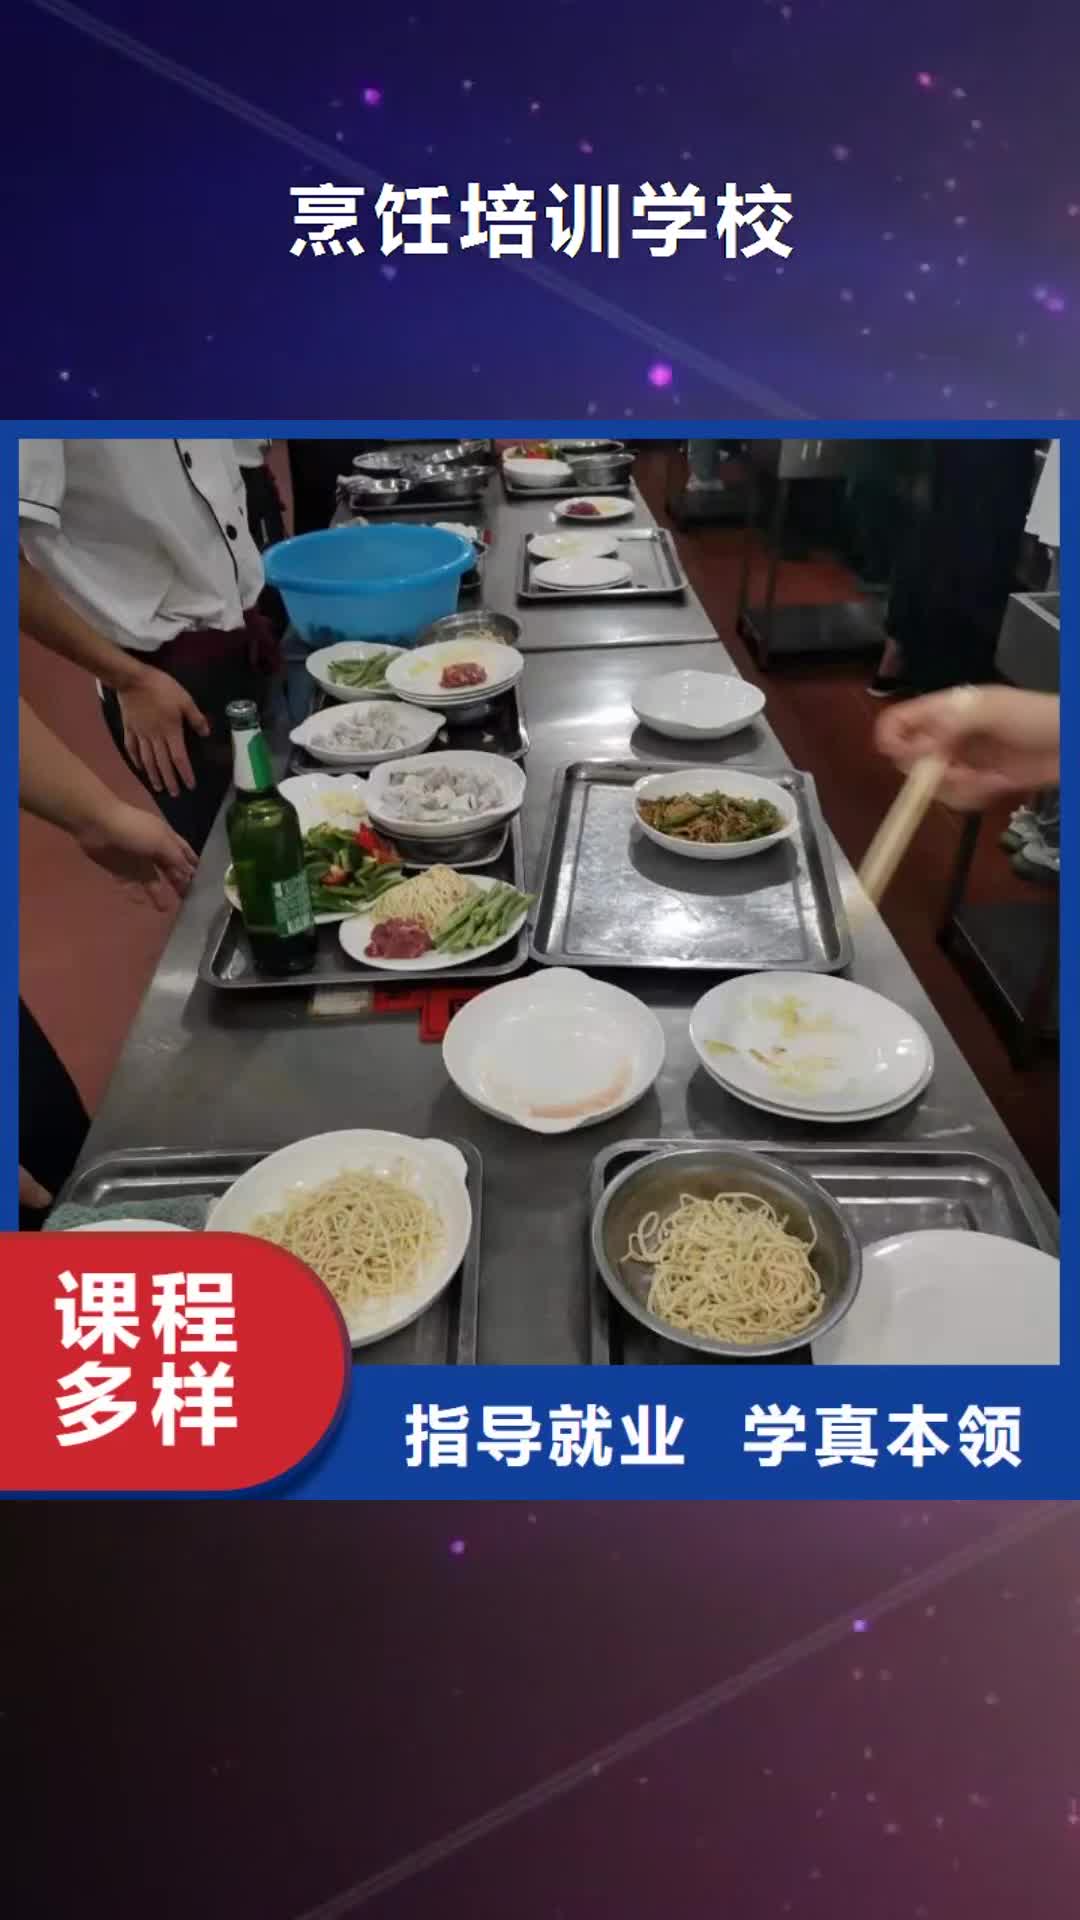 三明【烹饪培训学校】计算机培训学校高薪就业